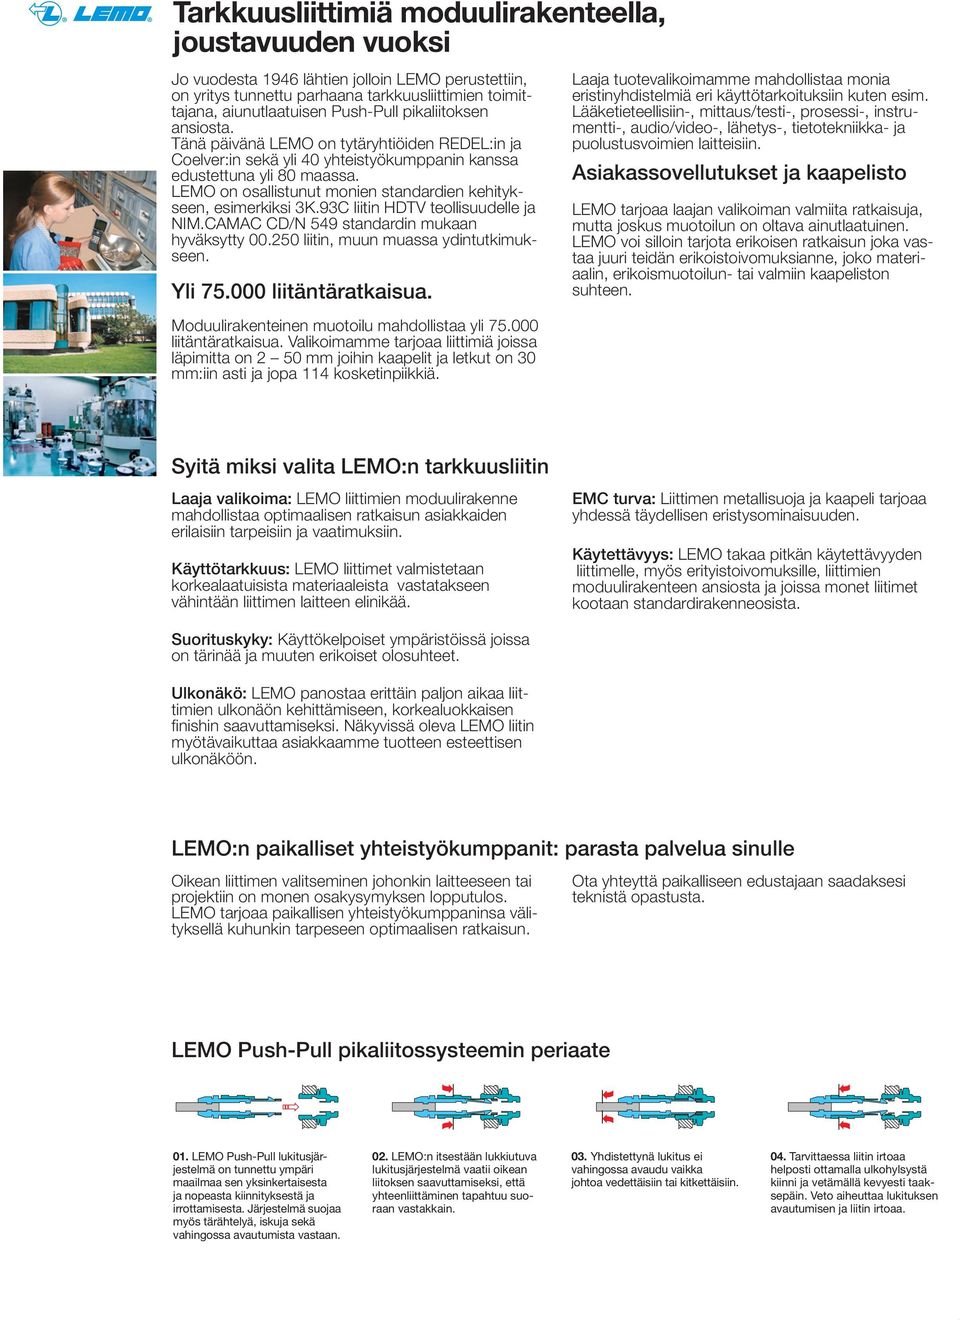 LEMO on osallistunut monien standardien kehitykseen, esimerkiksi 3K.93C liitin HDTV teollisuudelle ja NIM.CAMAC CD/N 549 standardin mukaan hyväksytty 00.250 liitin, muun muassa ydintutkimukseen.